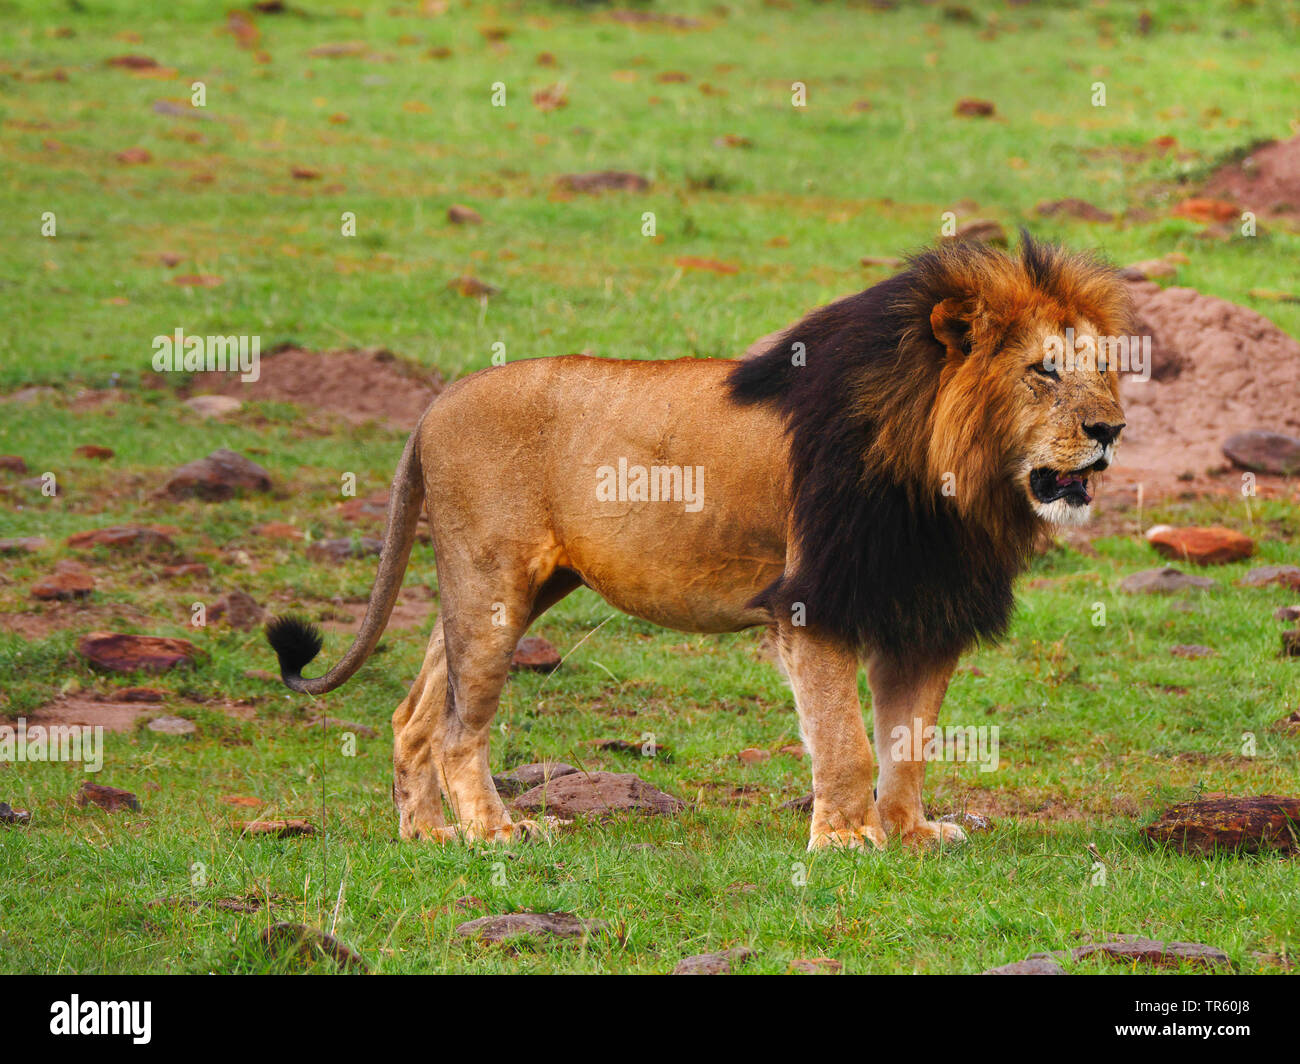 Lion (Panthera leo), homme lion debout dans une prairie, vue latérale, Kenya, Masai Mara National Park Banque D'Images